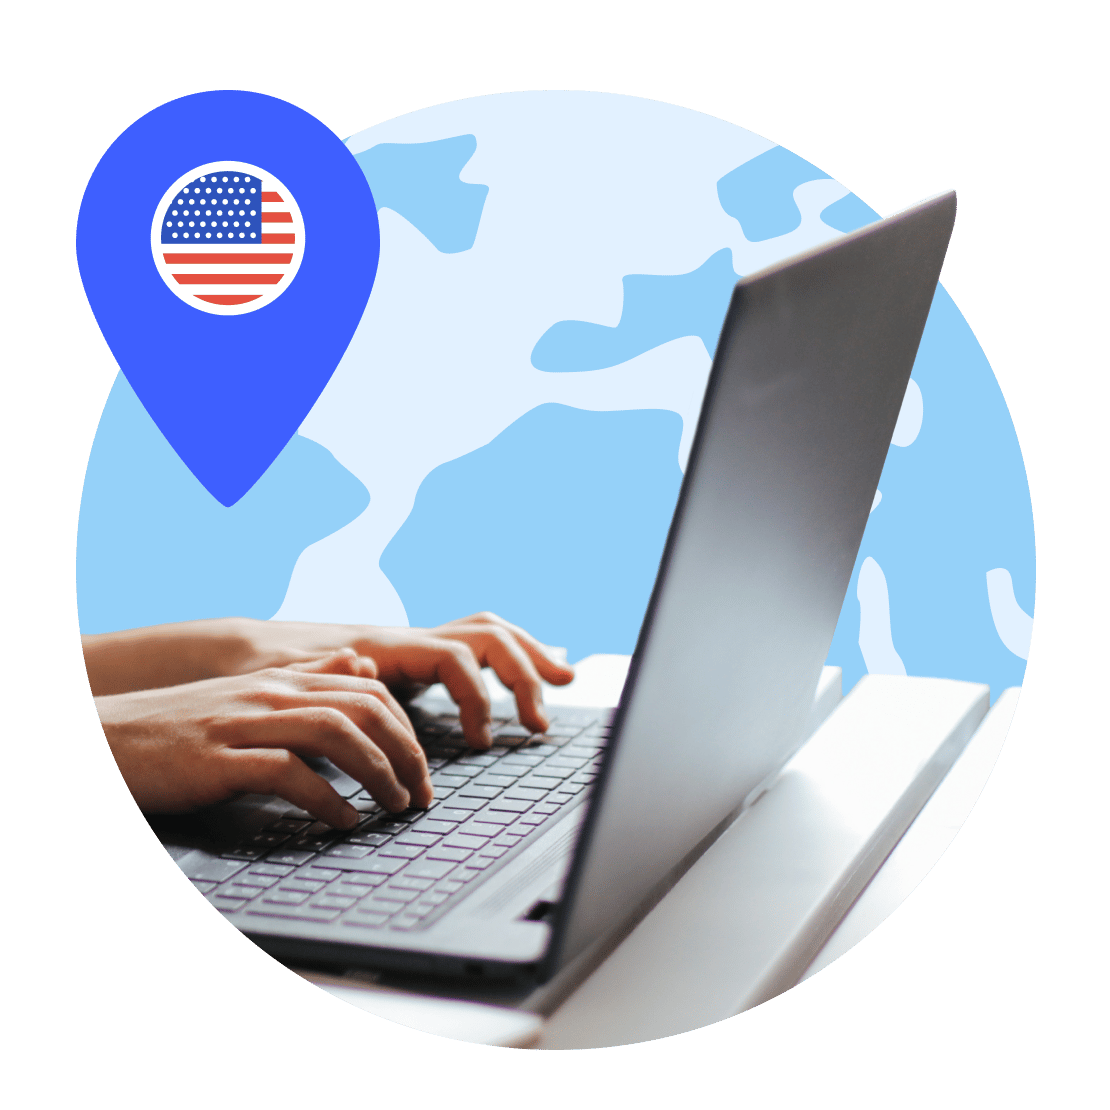 אדם מתחבר לשרת VPN בארה"ב כדי לאבטח את המכשיר שלו.